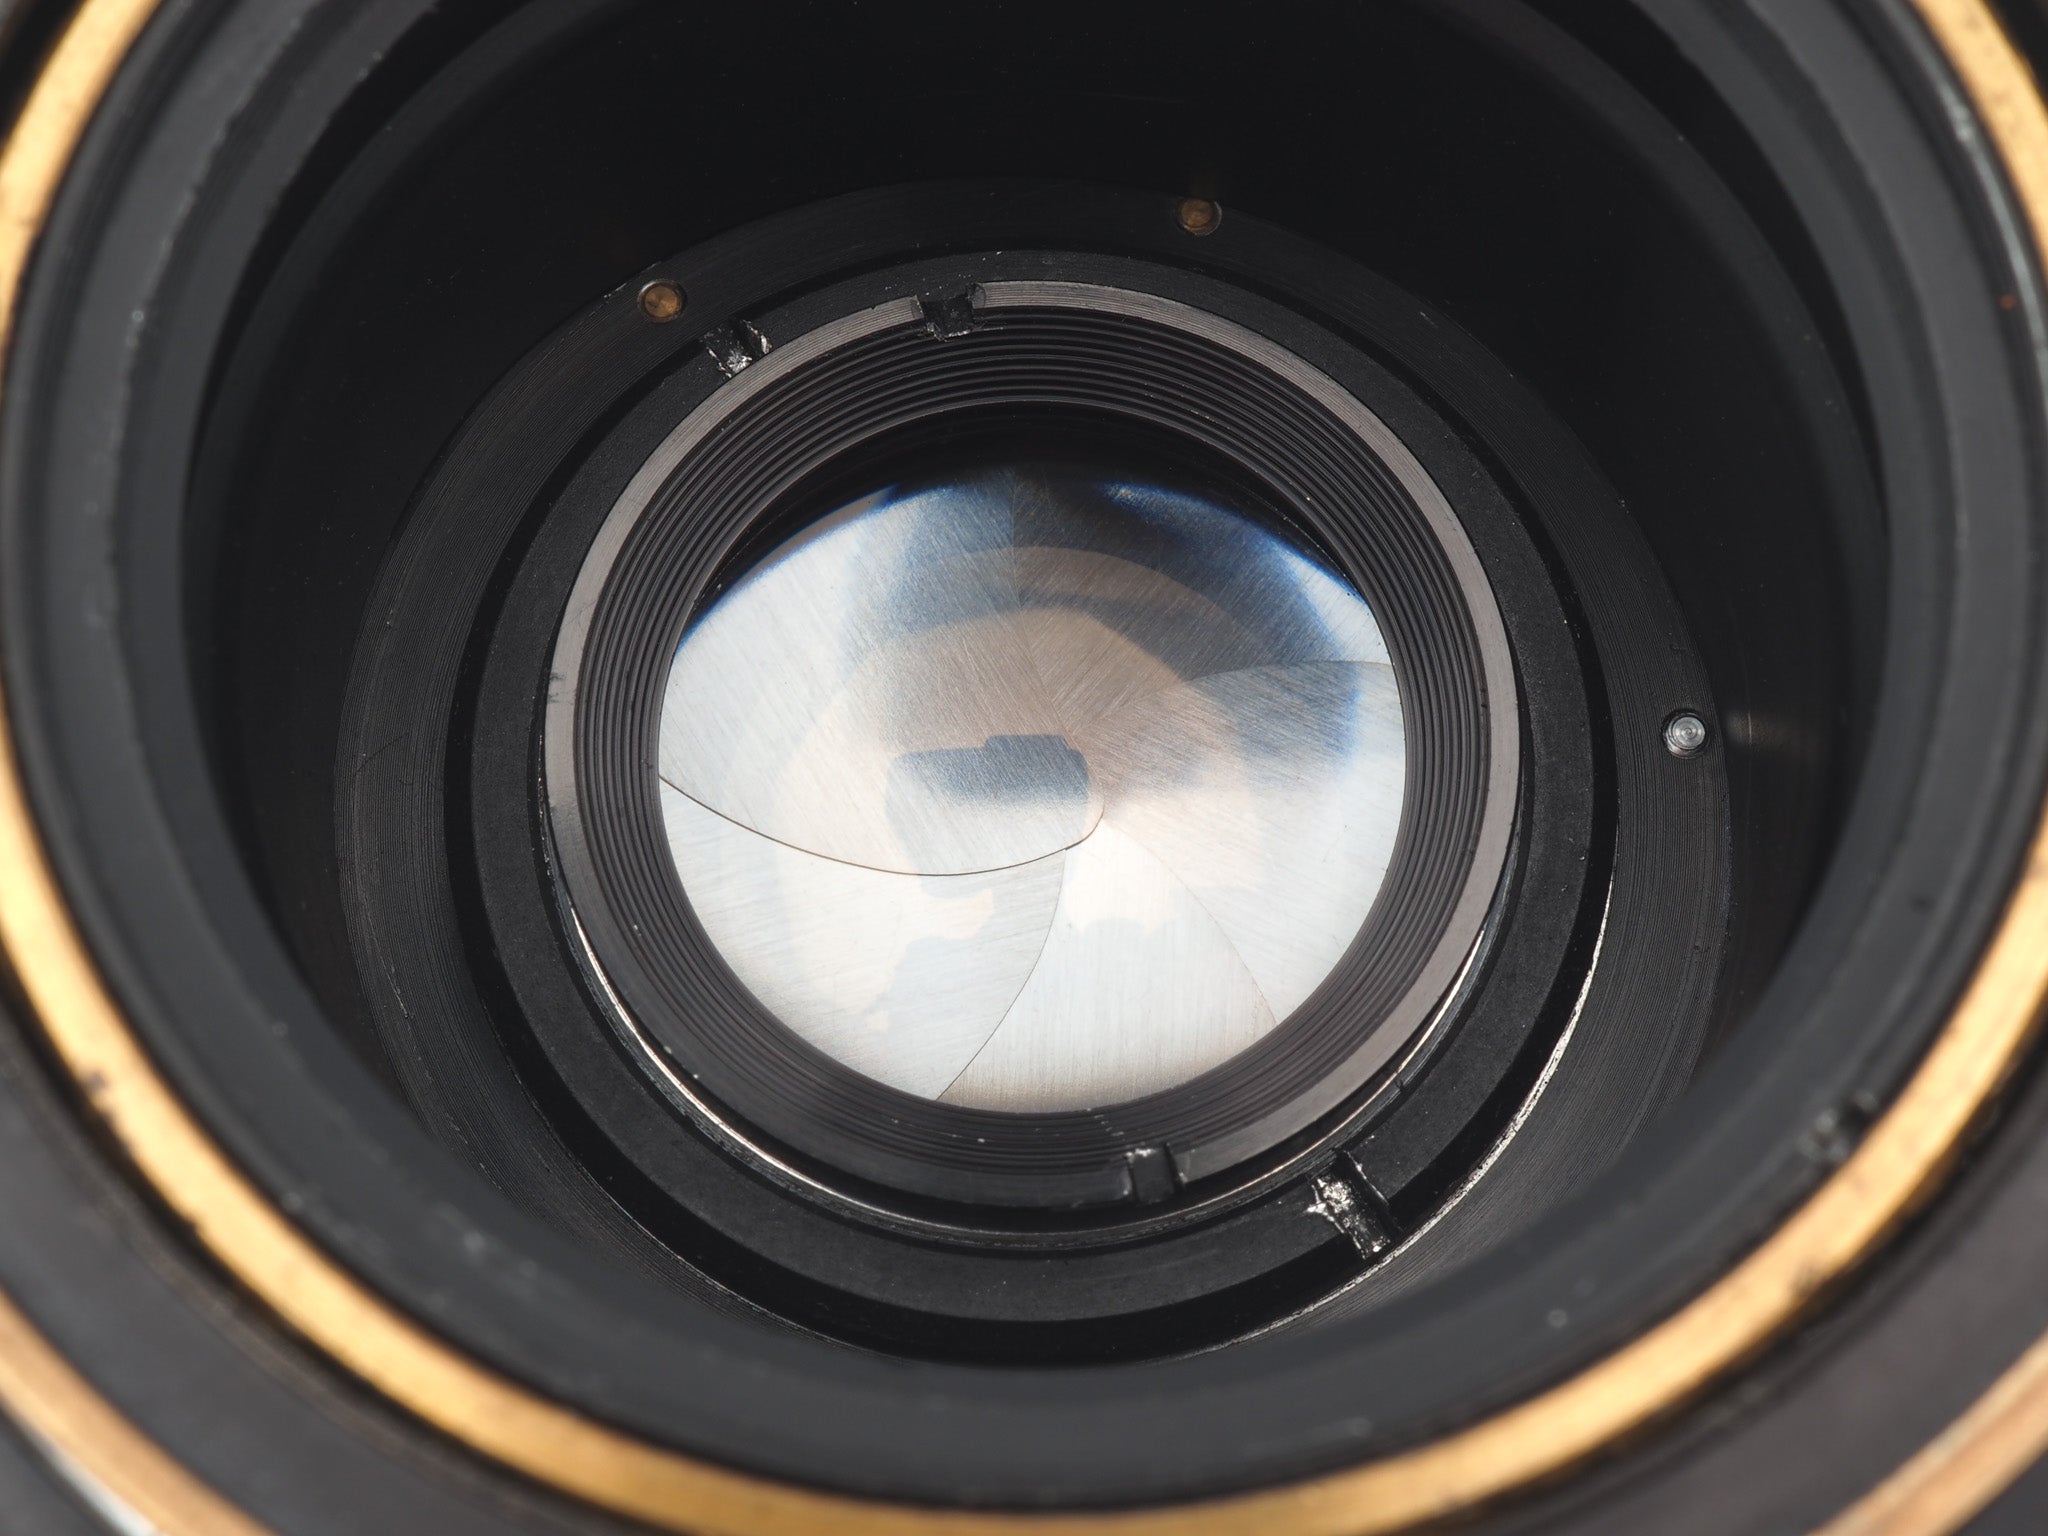 Mamiya Press + 90mm f3.5 Sekor + 6x9 Roll Film Adapter – Kamerastore